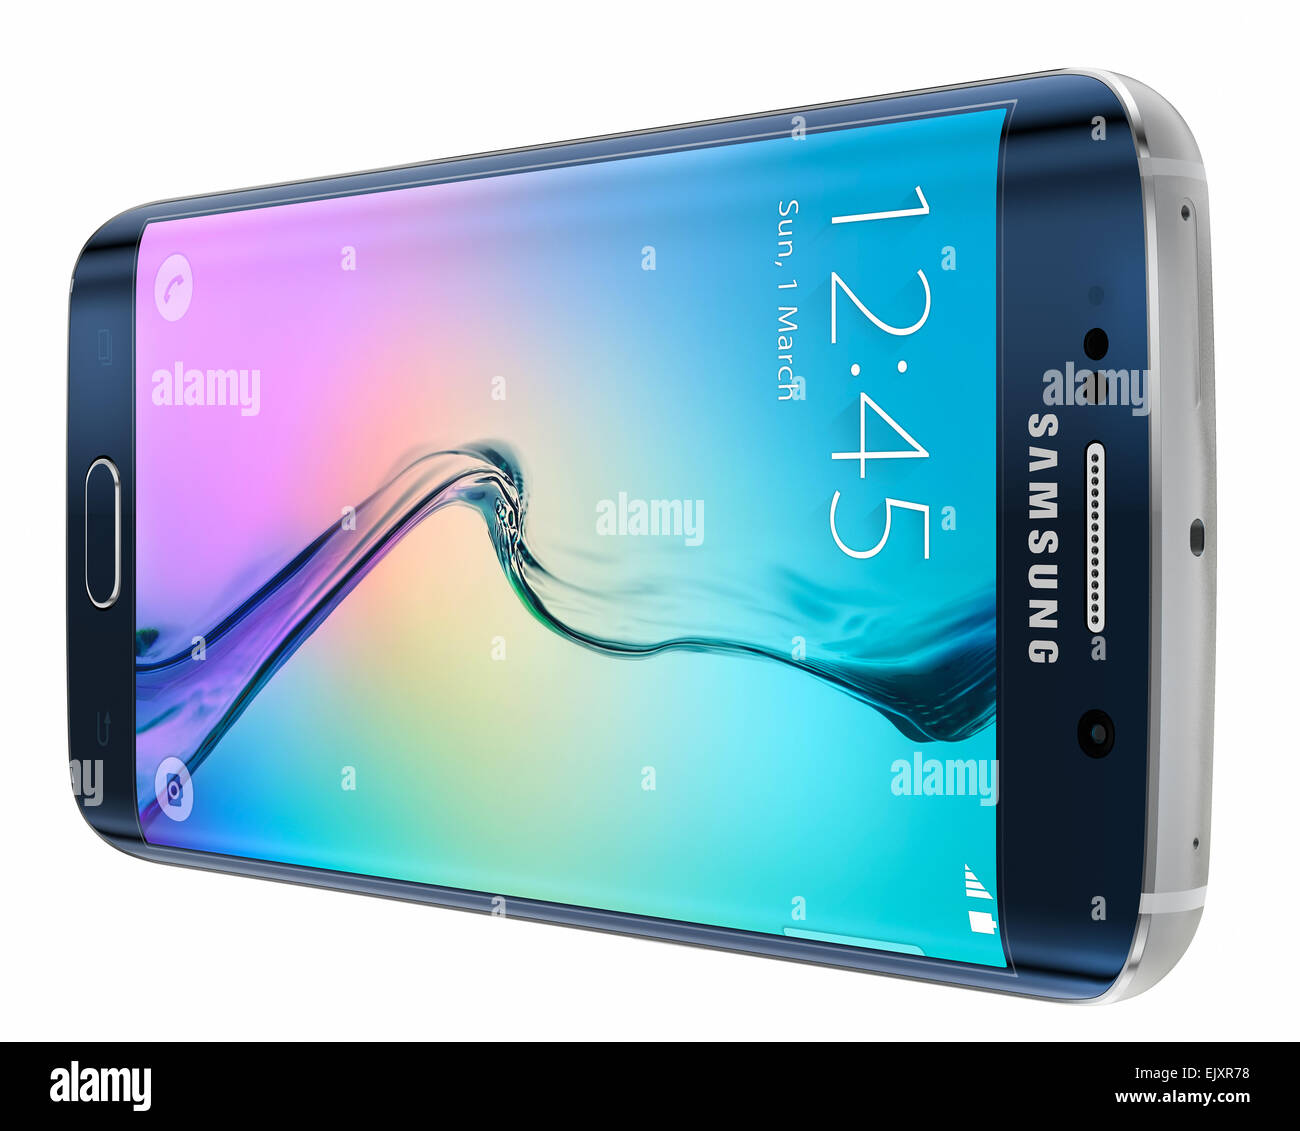 Samsung Galaxy S6 Bordo è il primo dispositivo con doppio vetro curvo display. Foto Stock